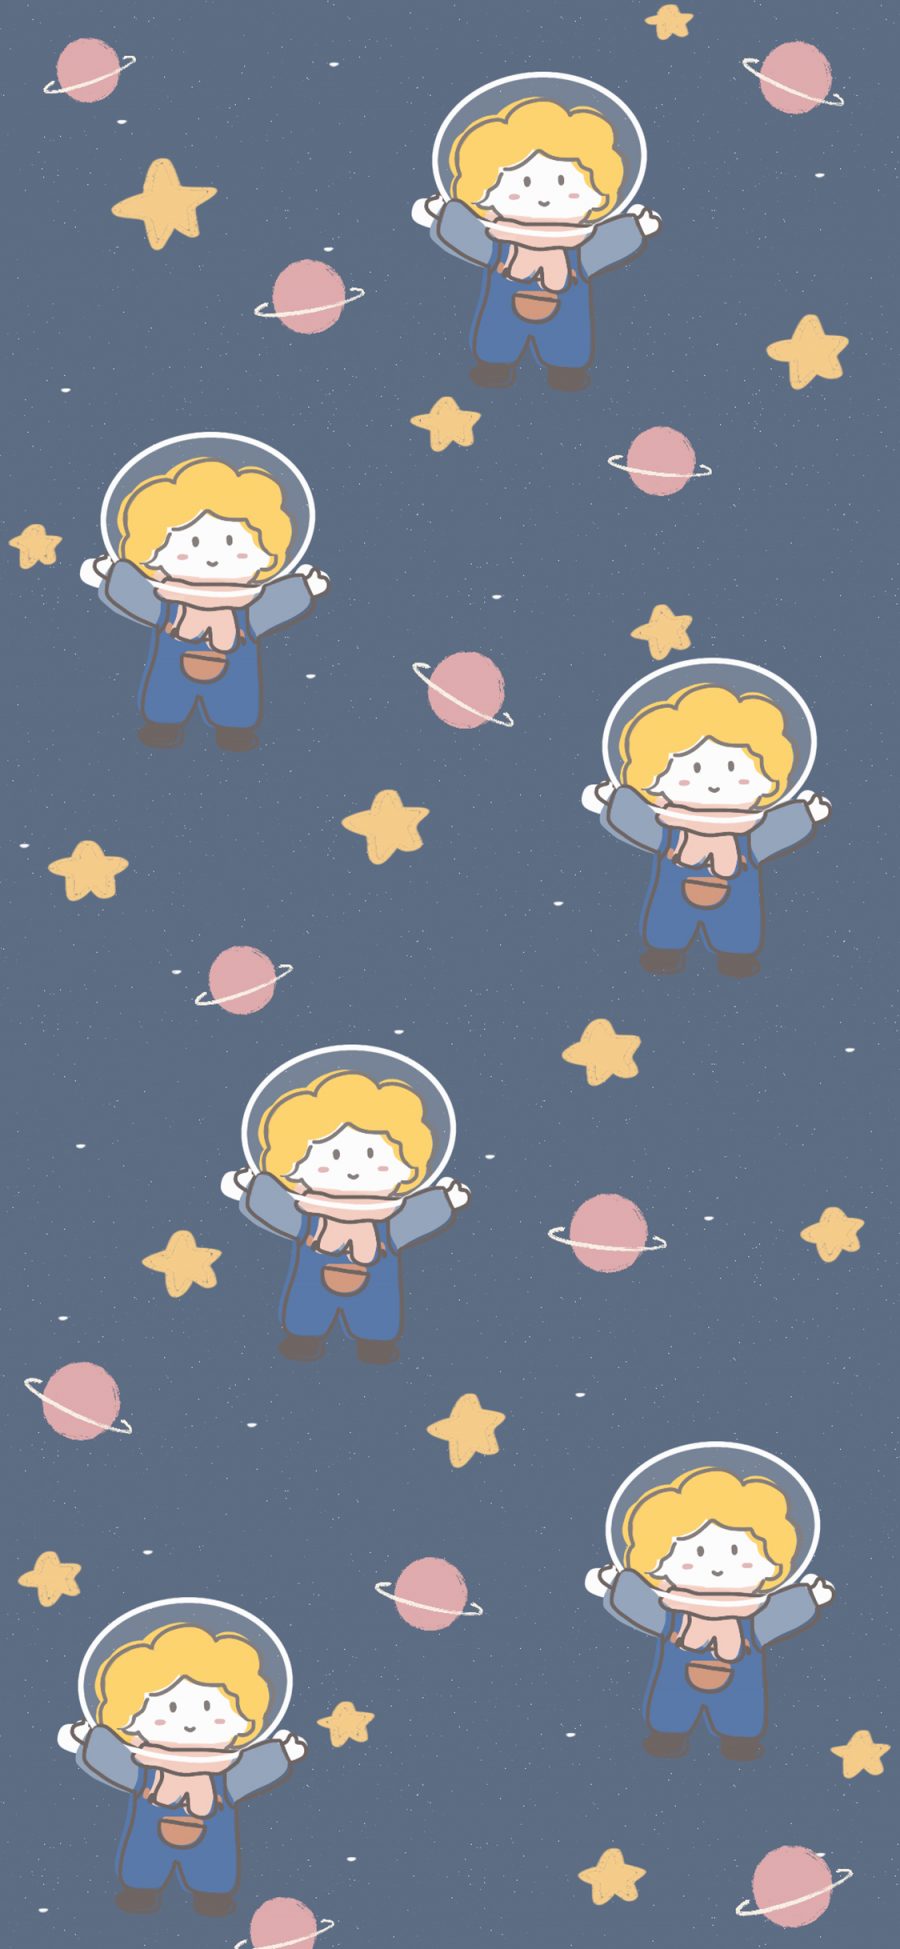 [2436×1125]平铺 星球 星星 小王子 苹果手机动漫壁纸图片